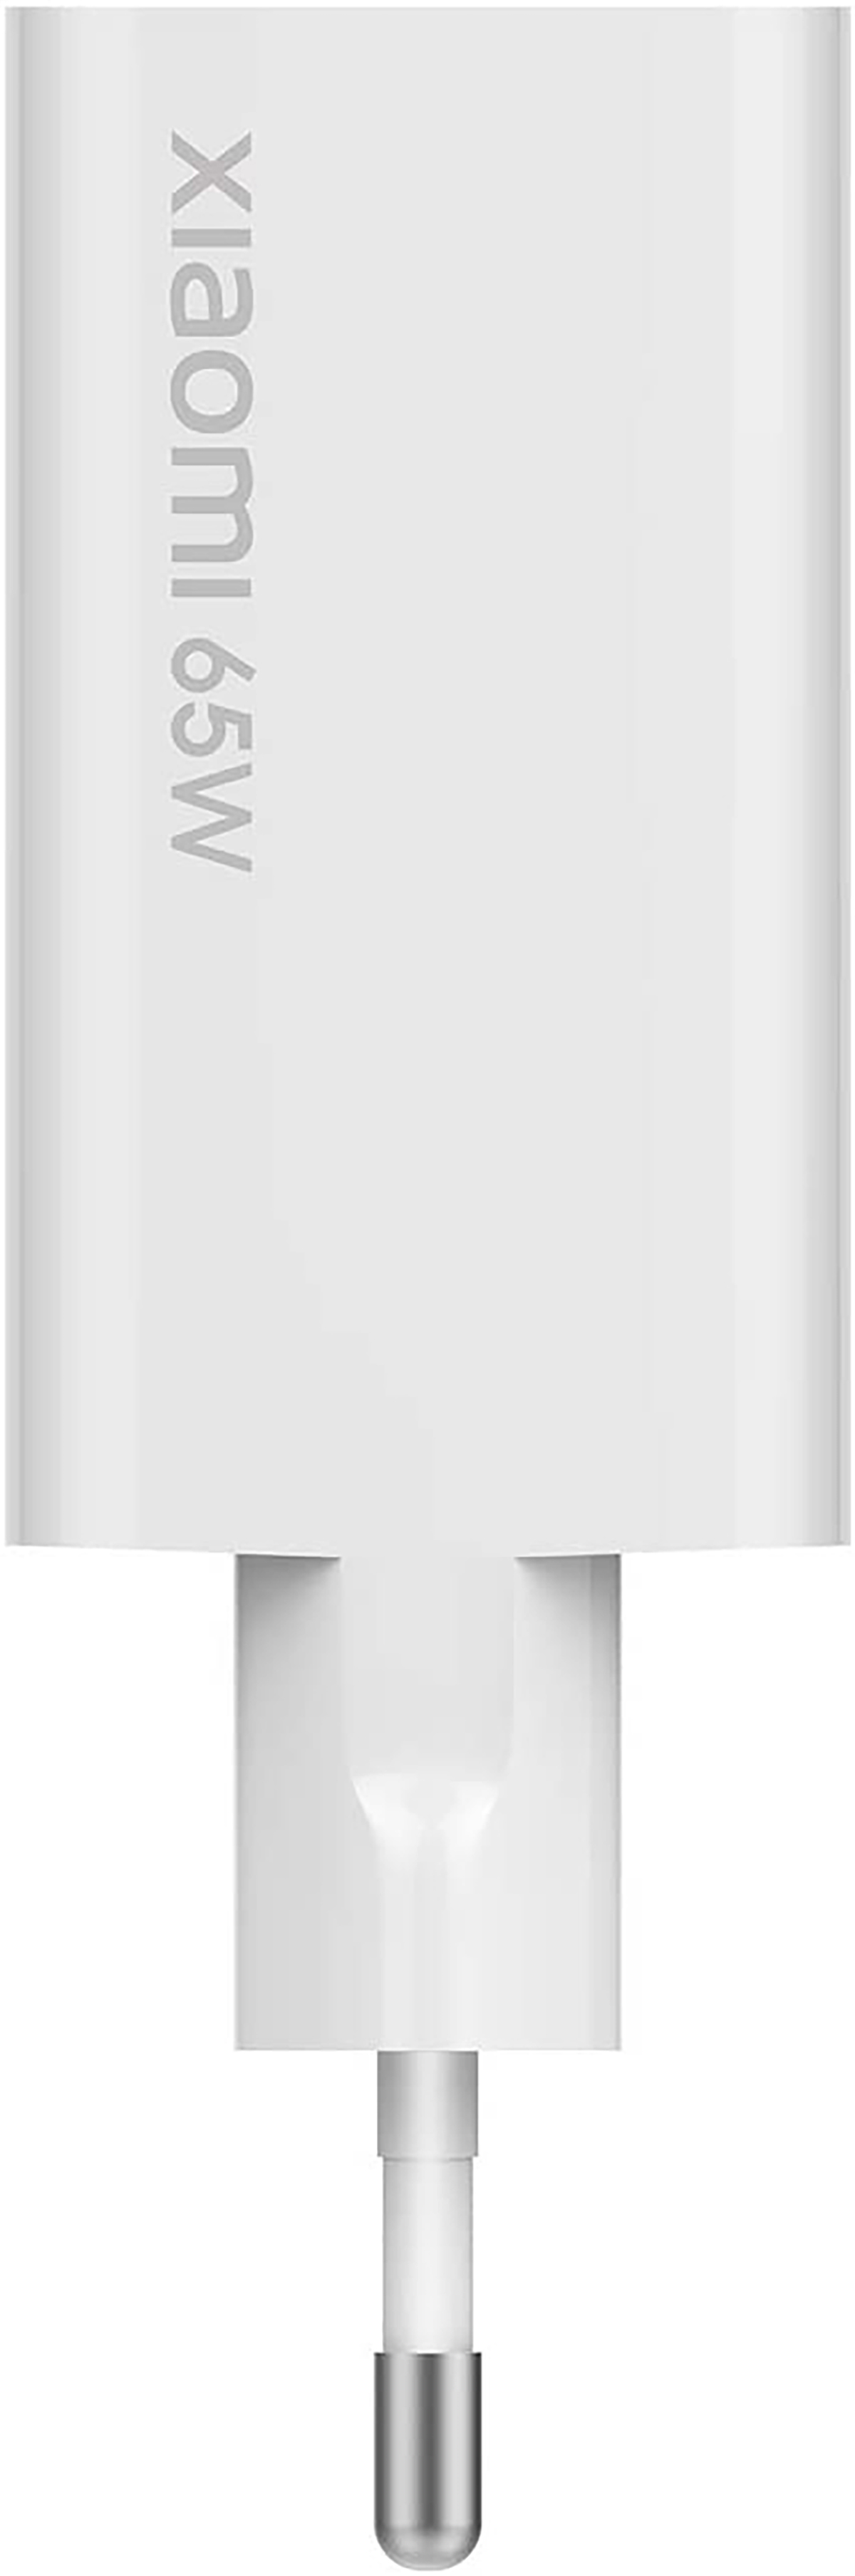 Netzteil, 5A USB-C Universal, Netzteile Volt, Weiß Wand-Ladegerät XIAOMI 100-240